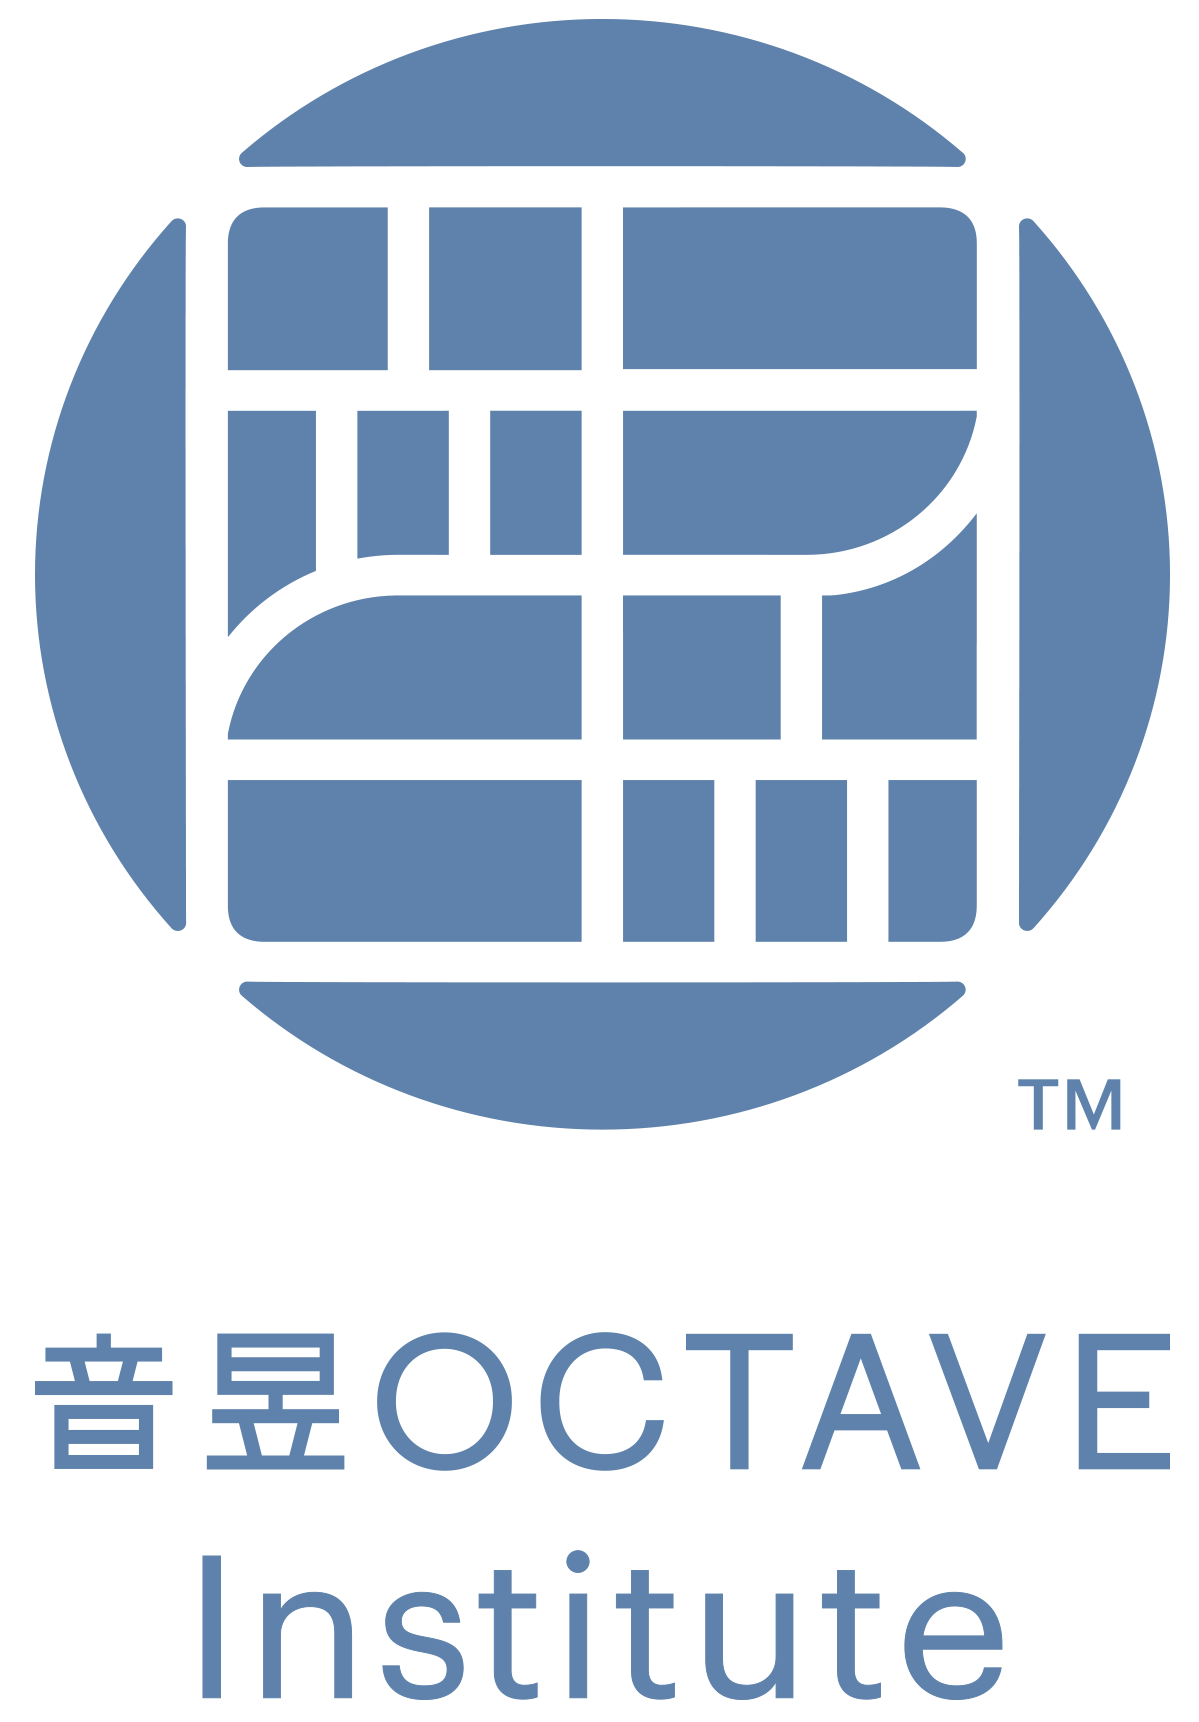 Octave Institute.png